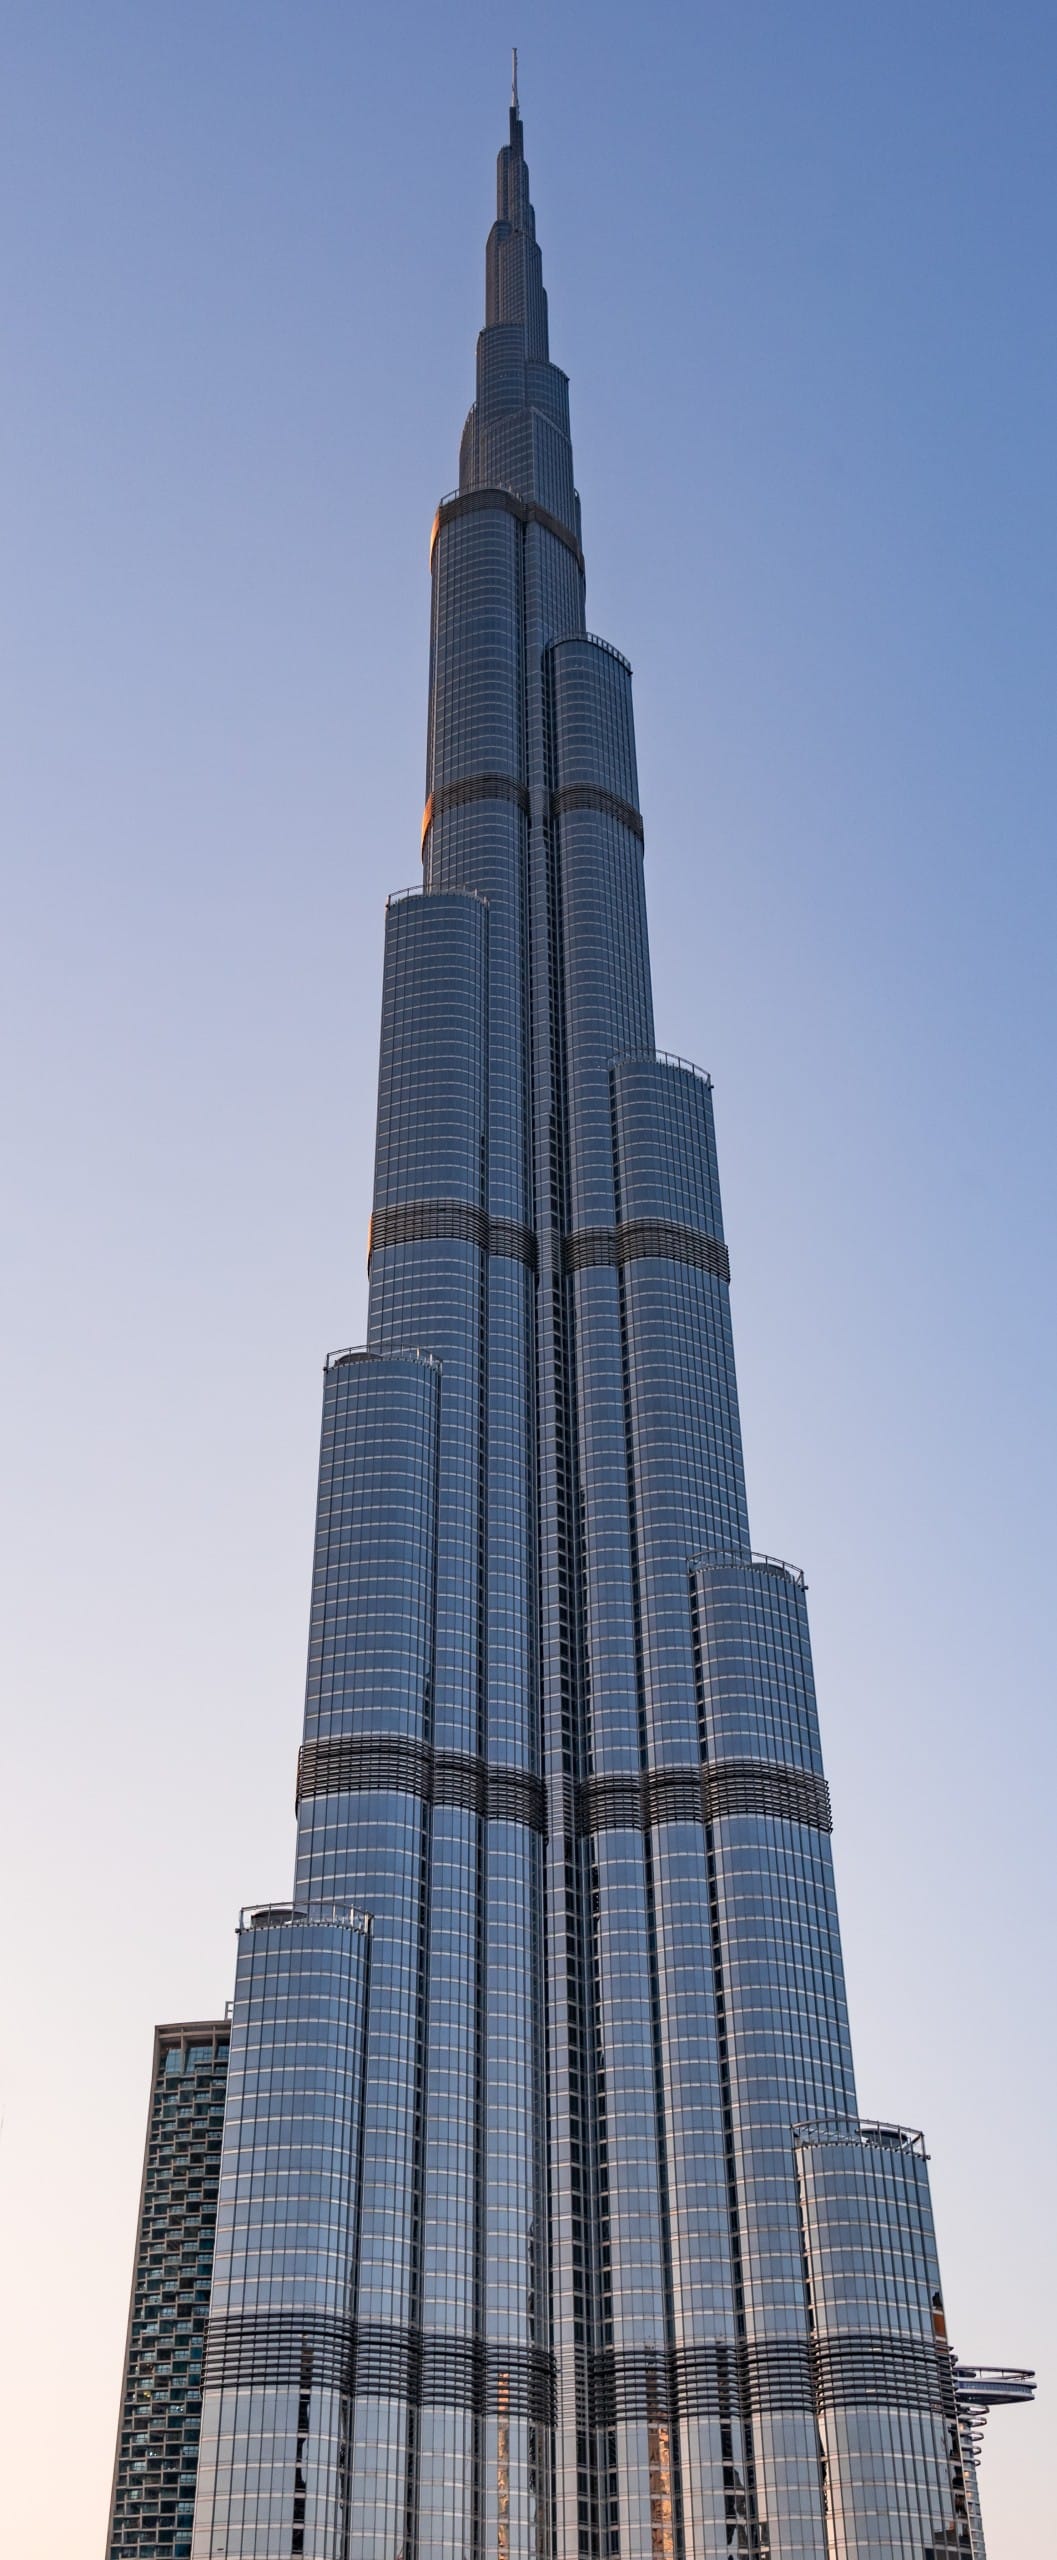 Das Burj Khalifa verschlankt sich zur Spitze hin. Bildquelle: Unsplash